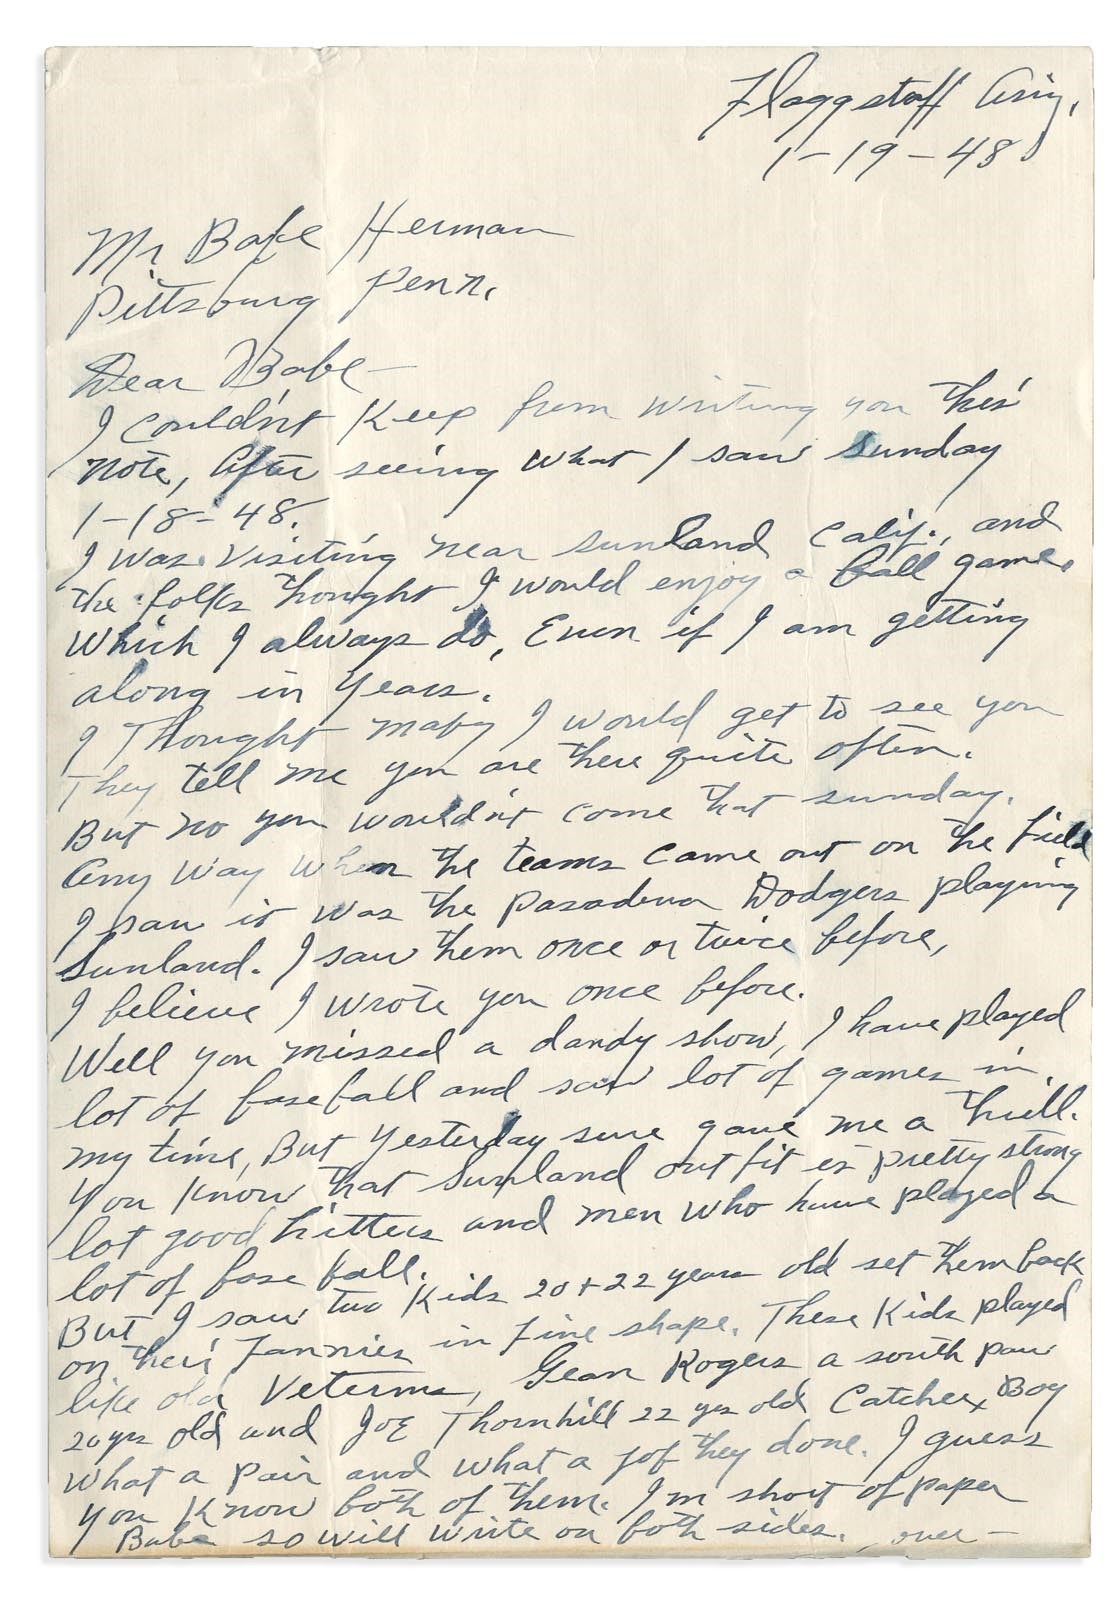 1948 Alex Pompez Handwritten Letter to Babe Herman (PSA)